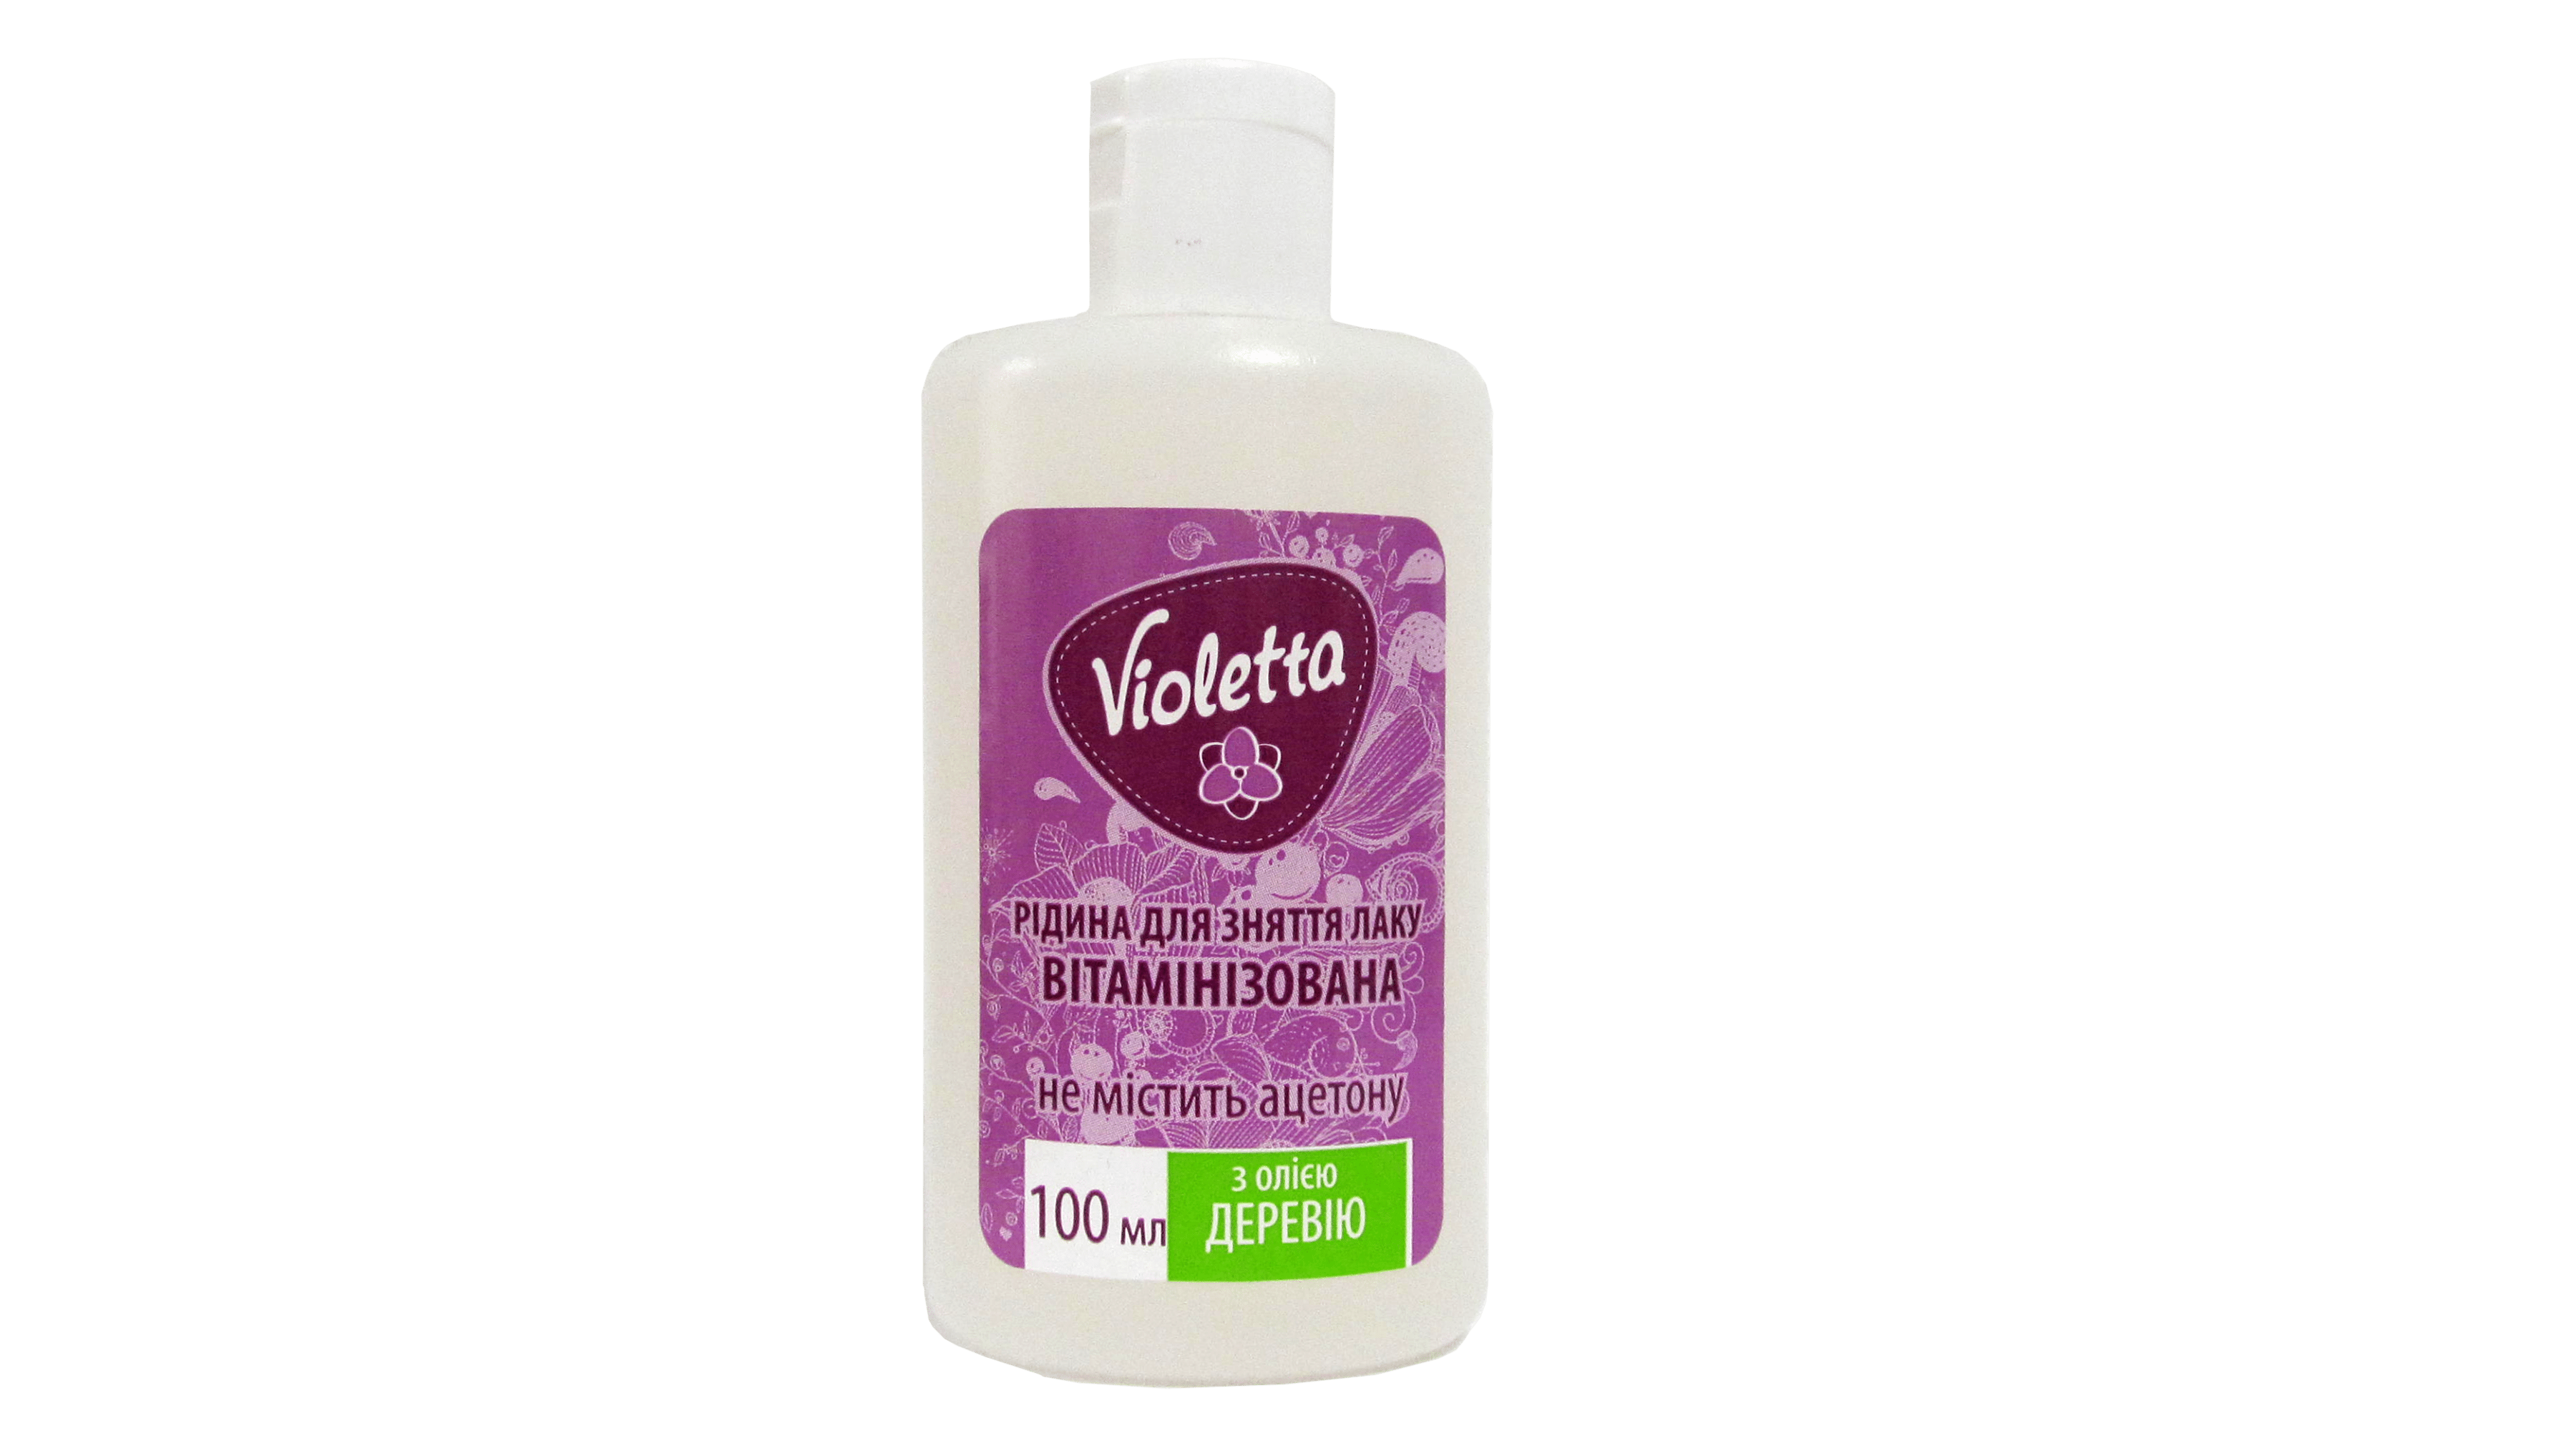 Жидкость для снятия лака Violetta с маслом тысячелистника, 100 мл